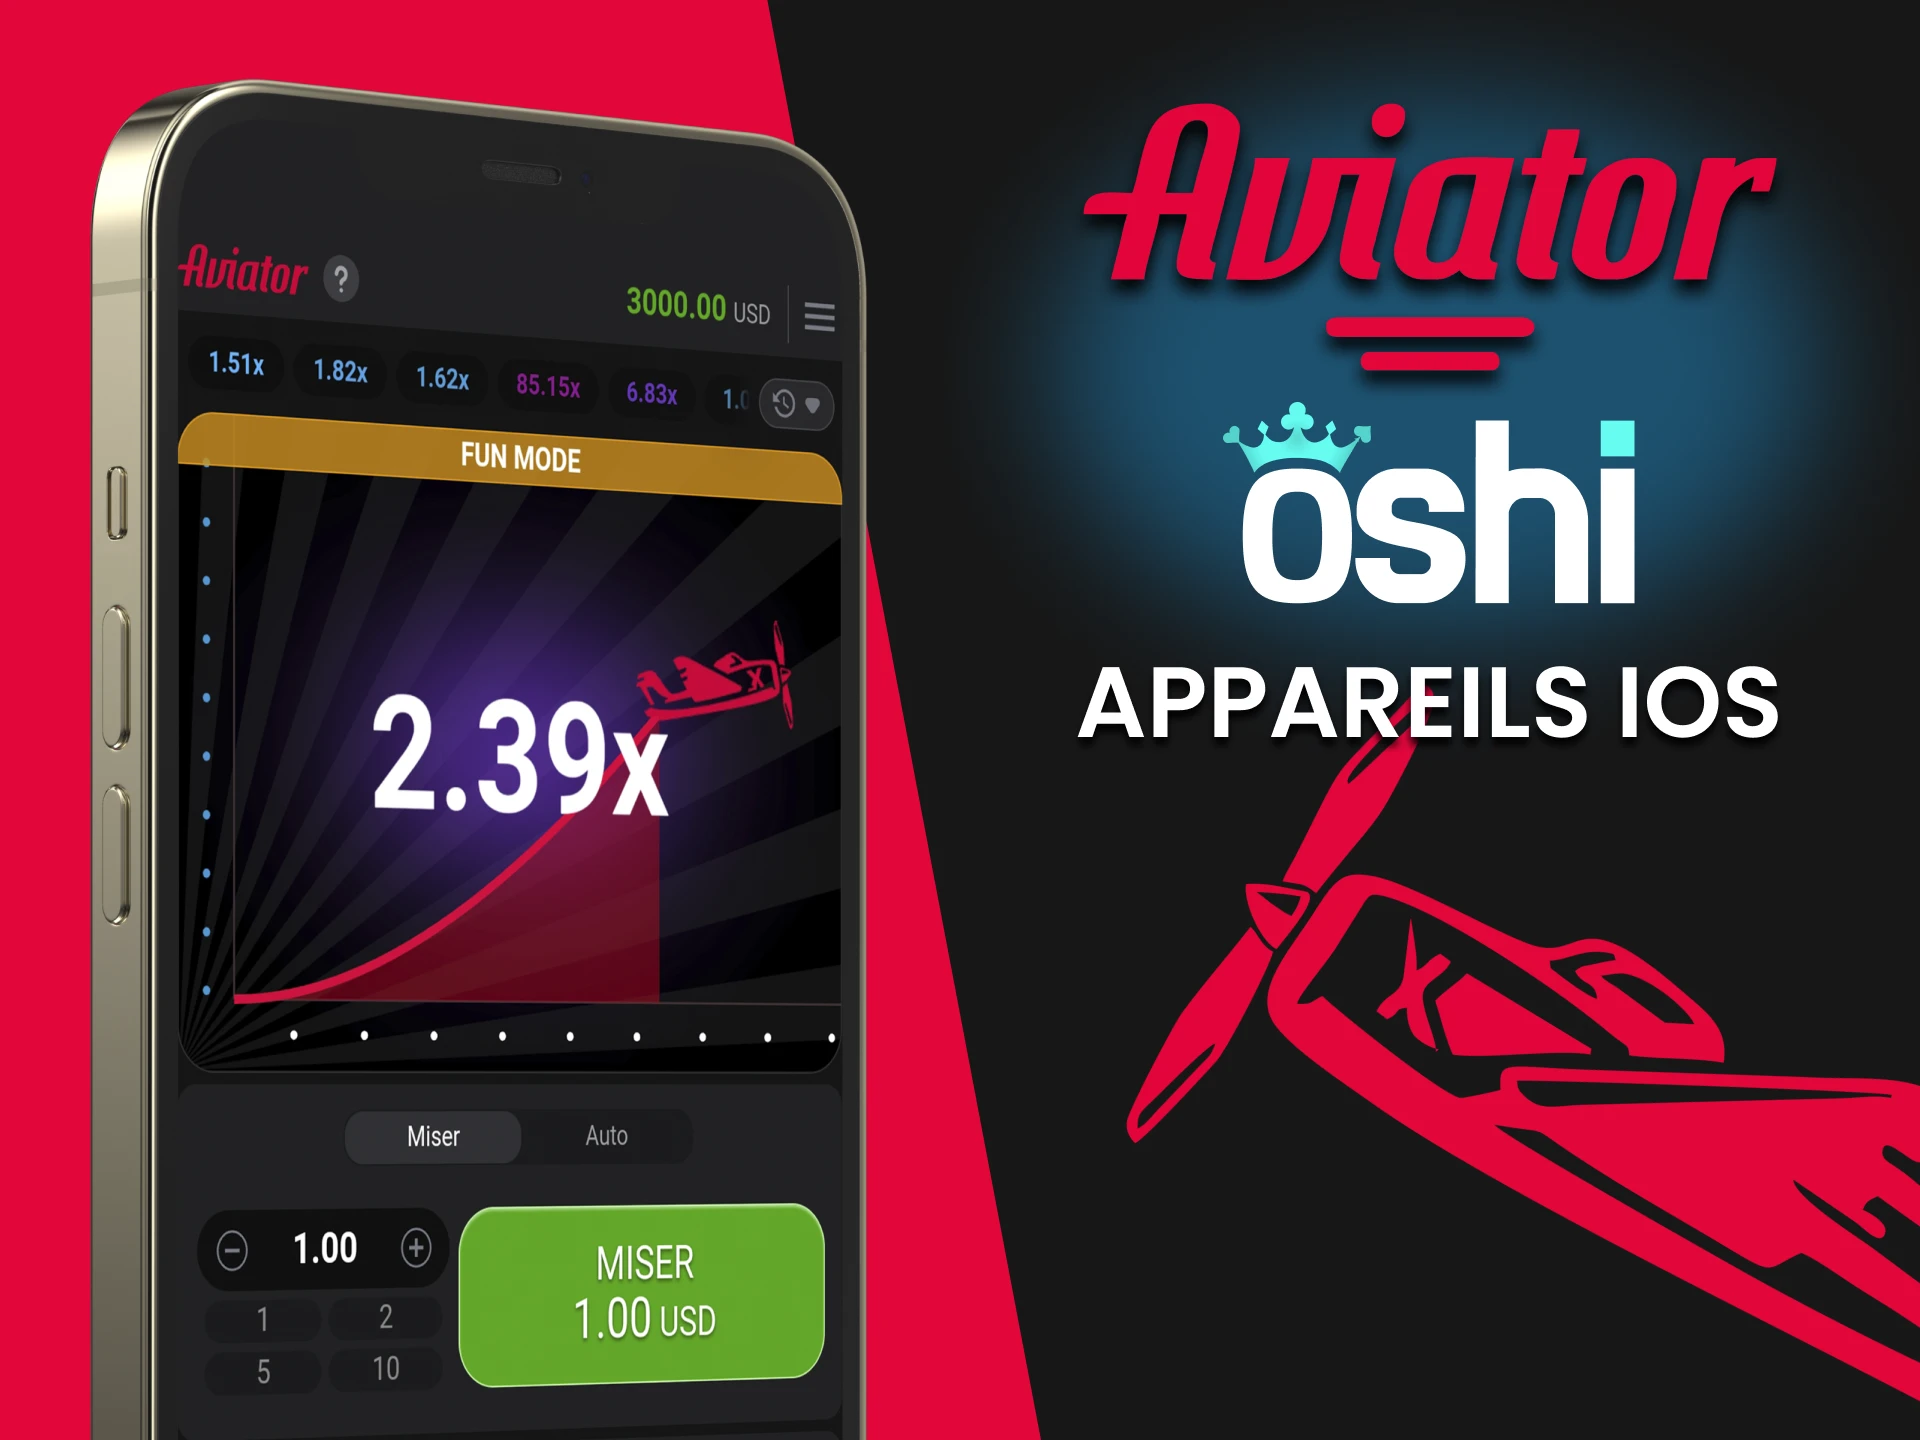 Installez l'application Oshi Casino pour jouer à Aviator sur iOS.